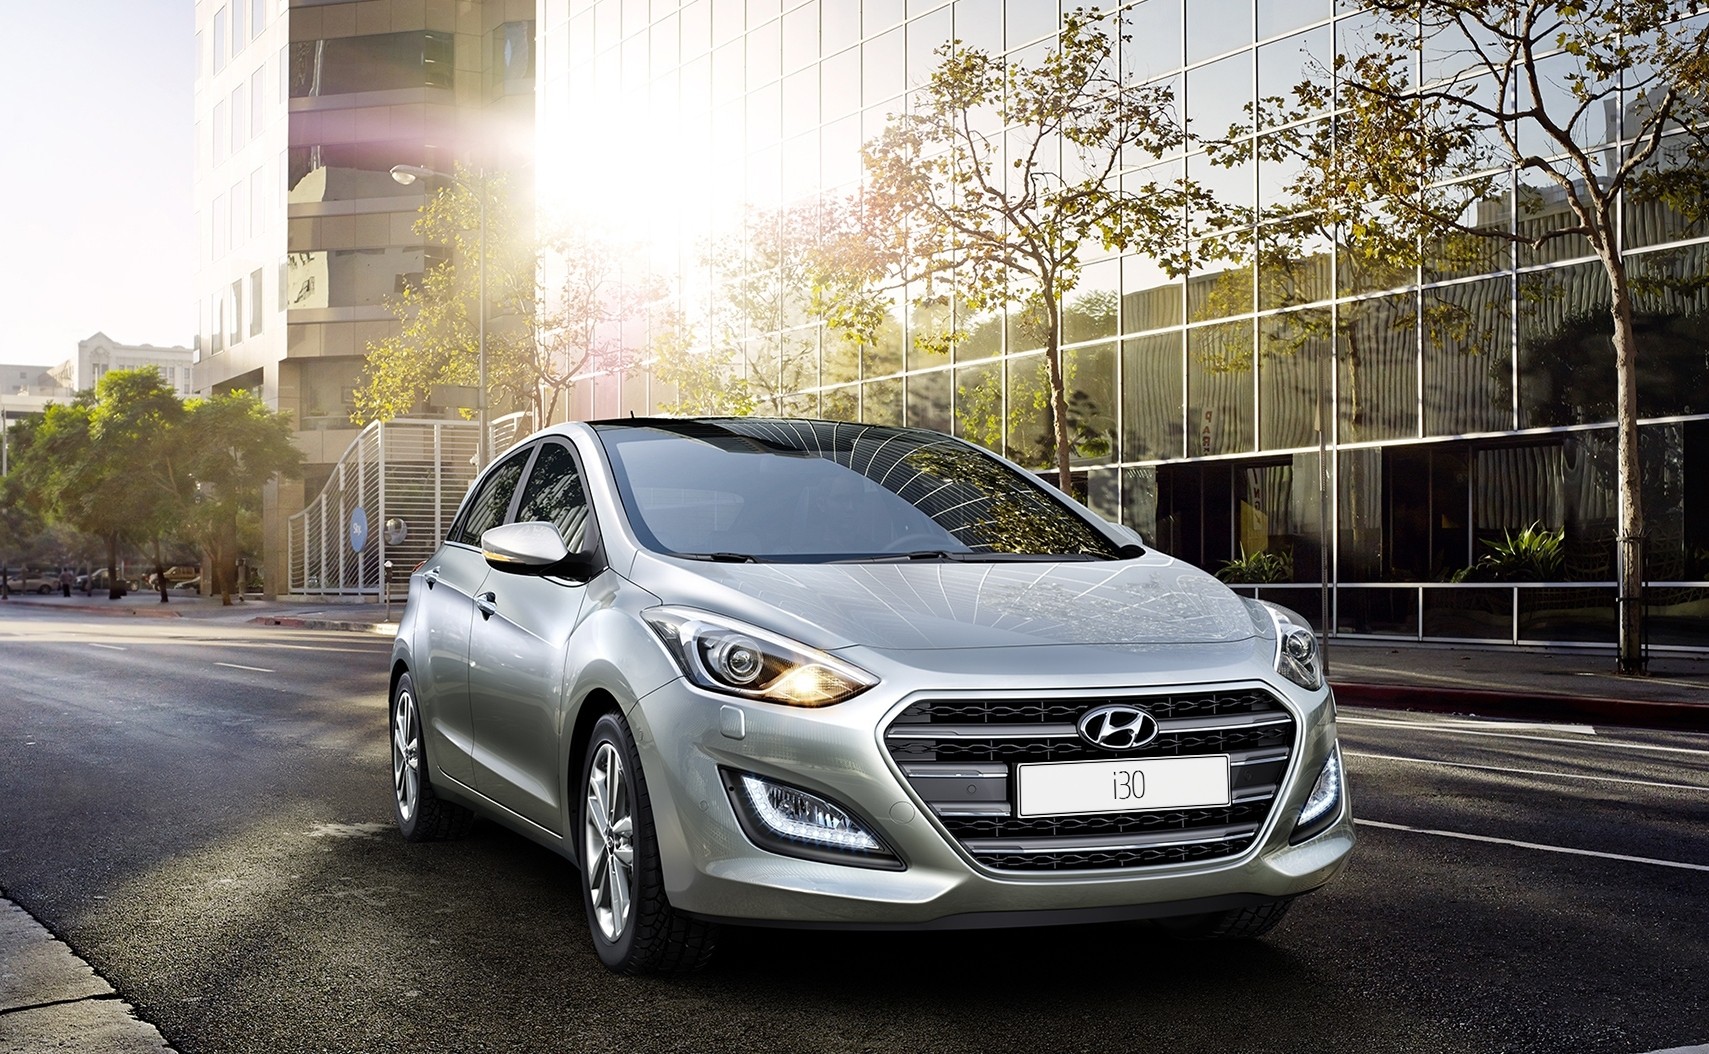 Τα χαρακτηριστικά του νέου Hyundai i30